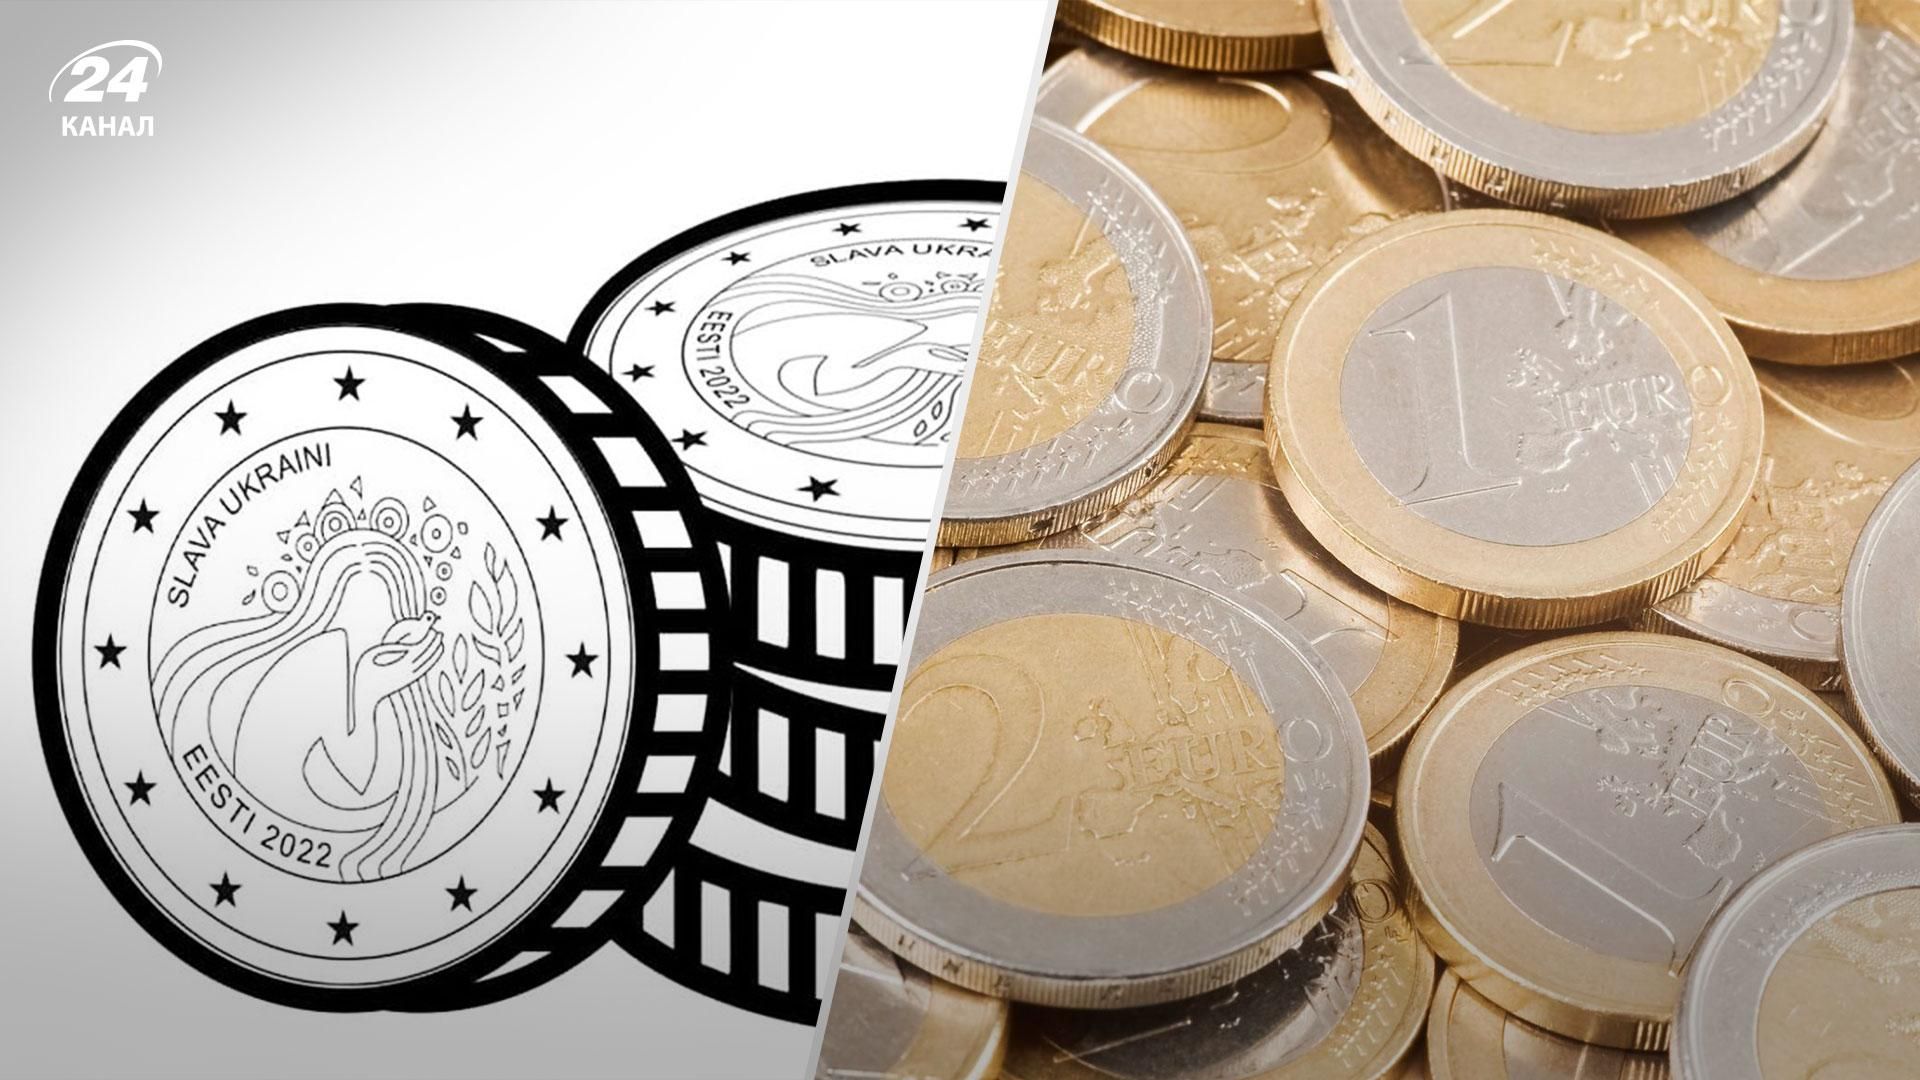 Эстония планирует выпустить монету номиналом в 2 евро с надписью "Слава Украине"